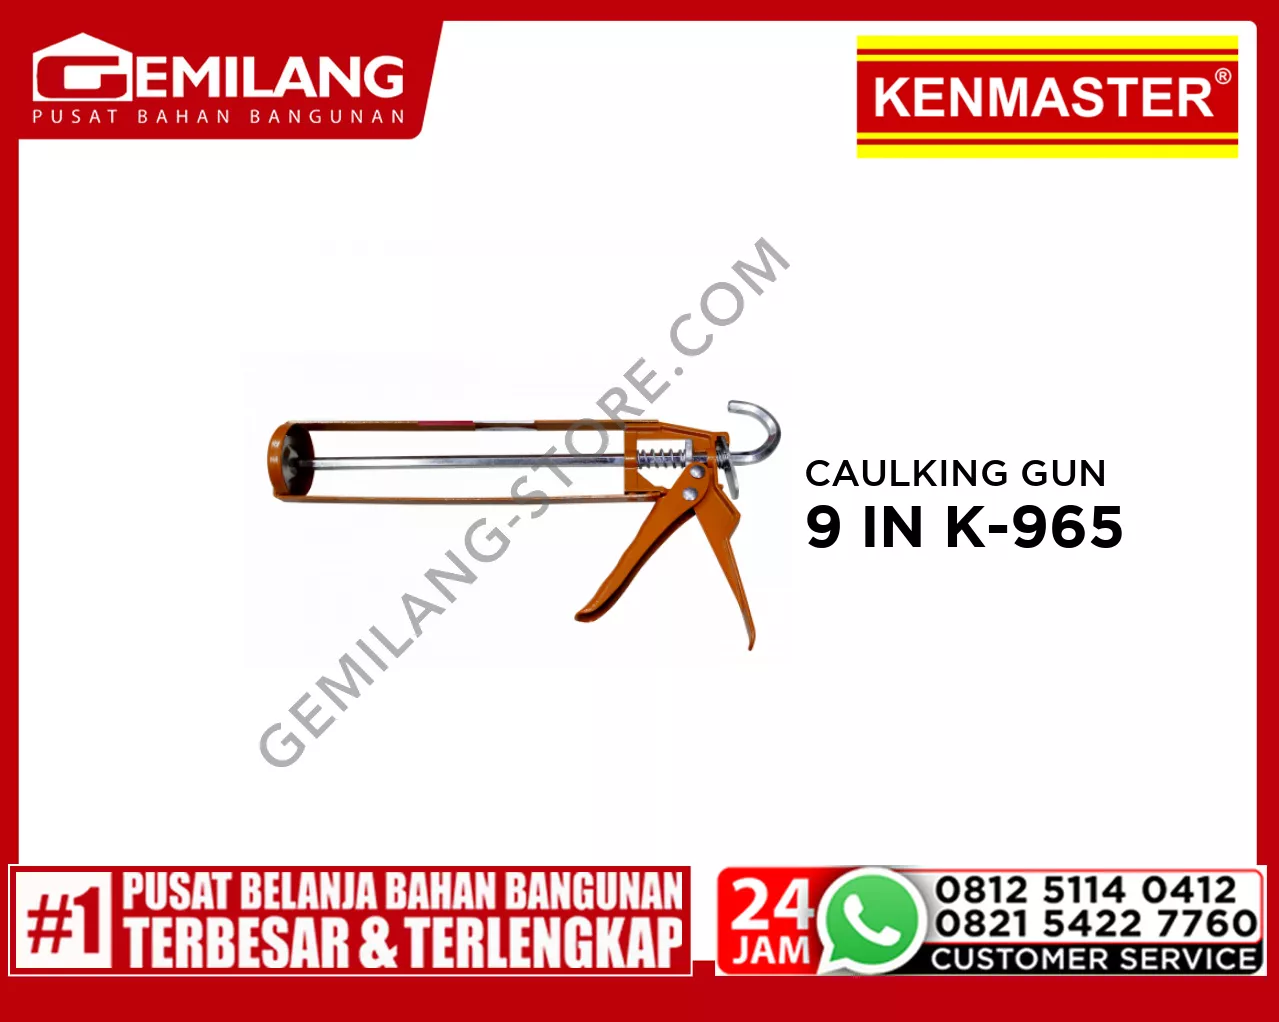 KENMASTER CAULKING GUN 9 IN K-965